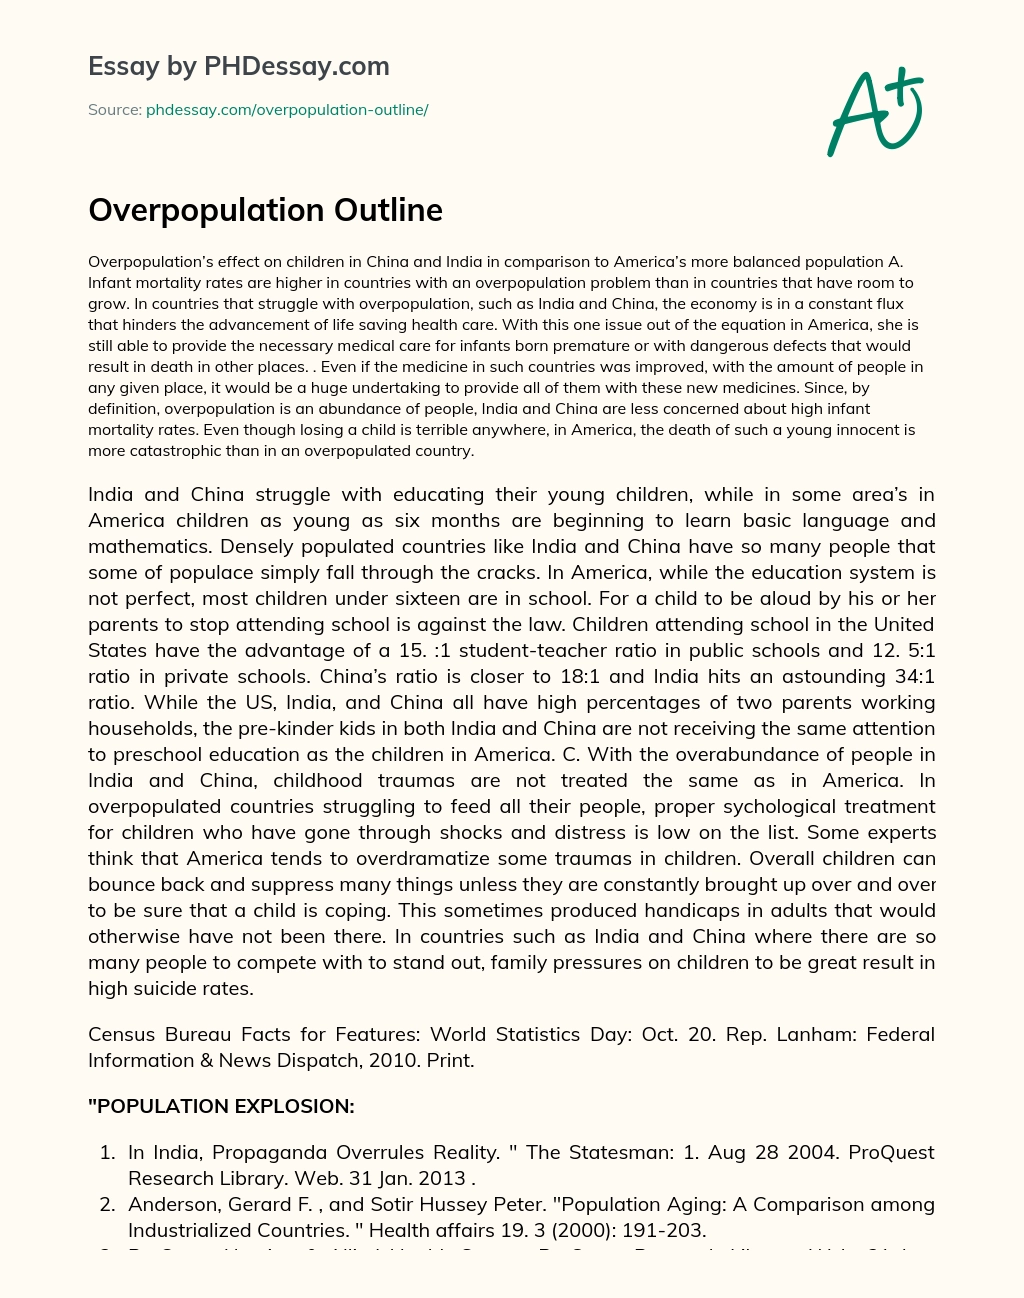 Overpopulation Outline essay